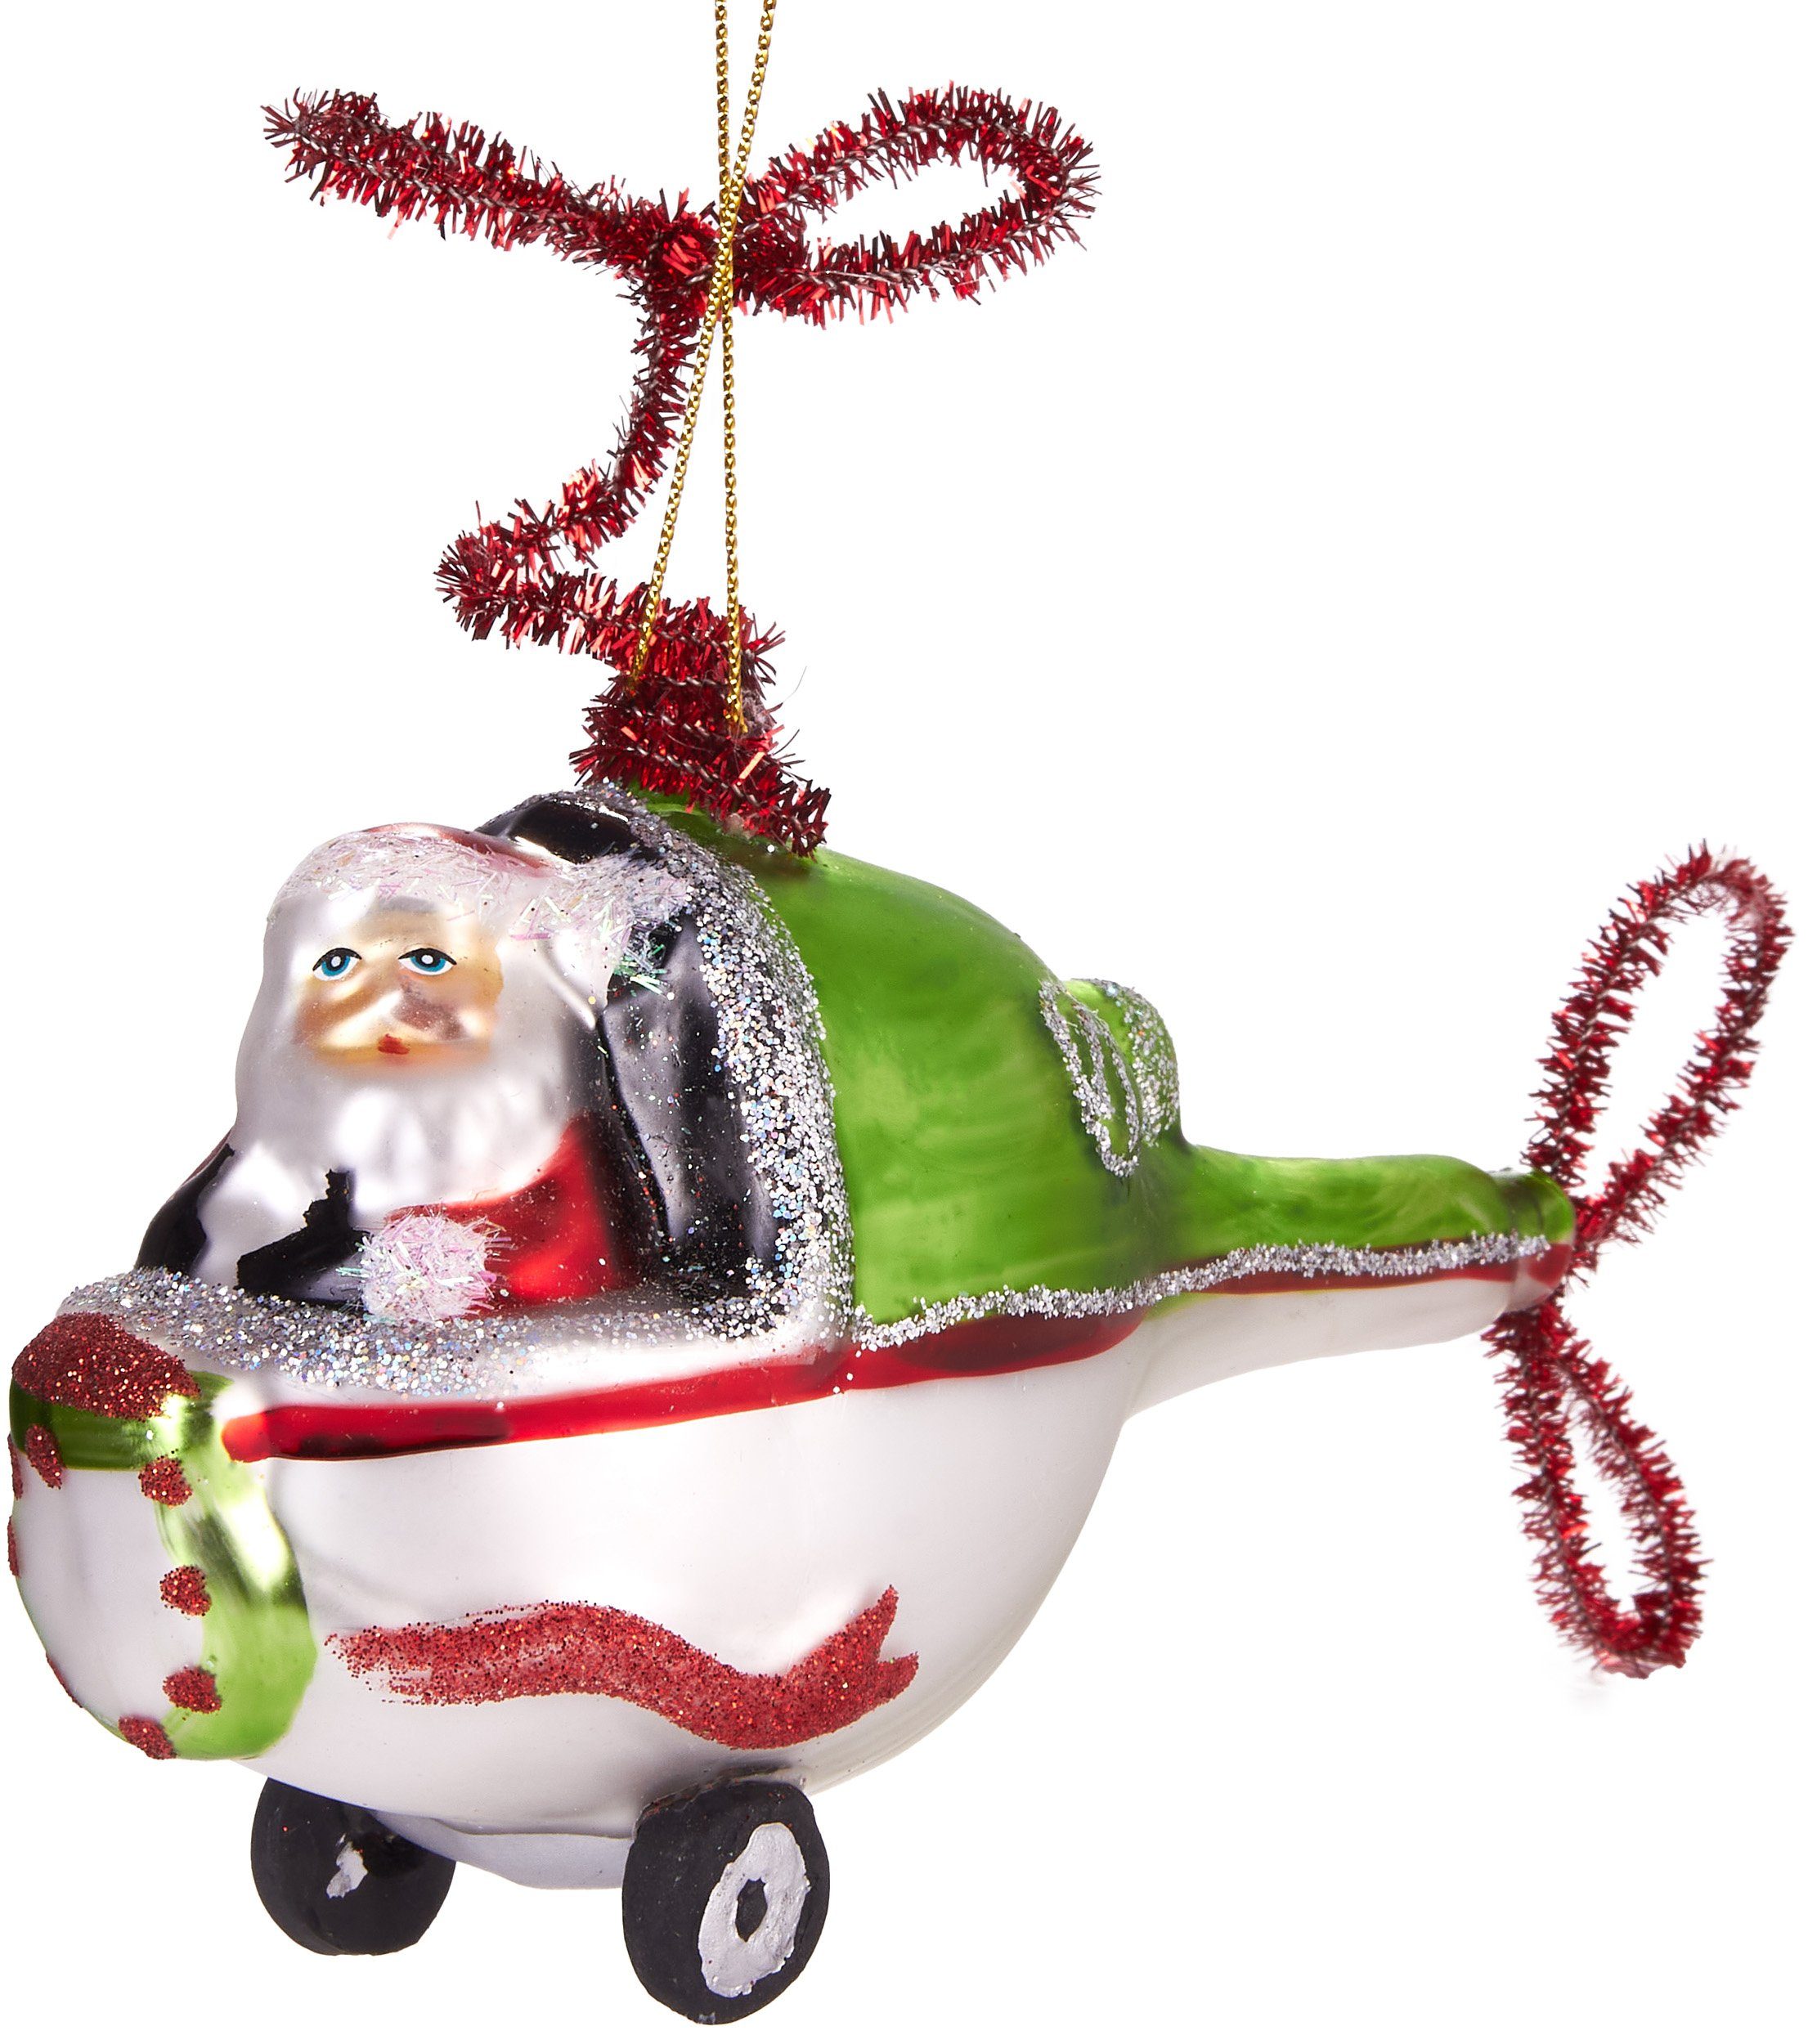 aus Handbemalte 11 Heli, Glas, Weihnachtskugel - im fliegender Helikopter Weihnachtsanhänger Christbaumschmuck cm Hubschrauber mundgeblasenes Unikat, BRUBAKER Weihnachtsmann lustige Baumkugel